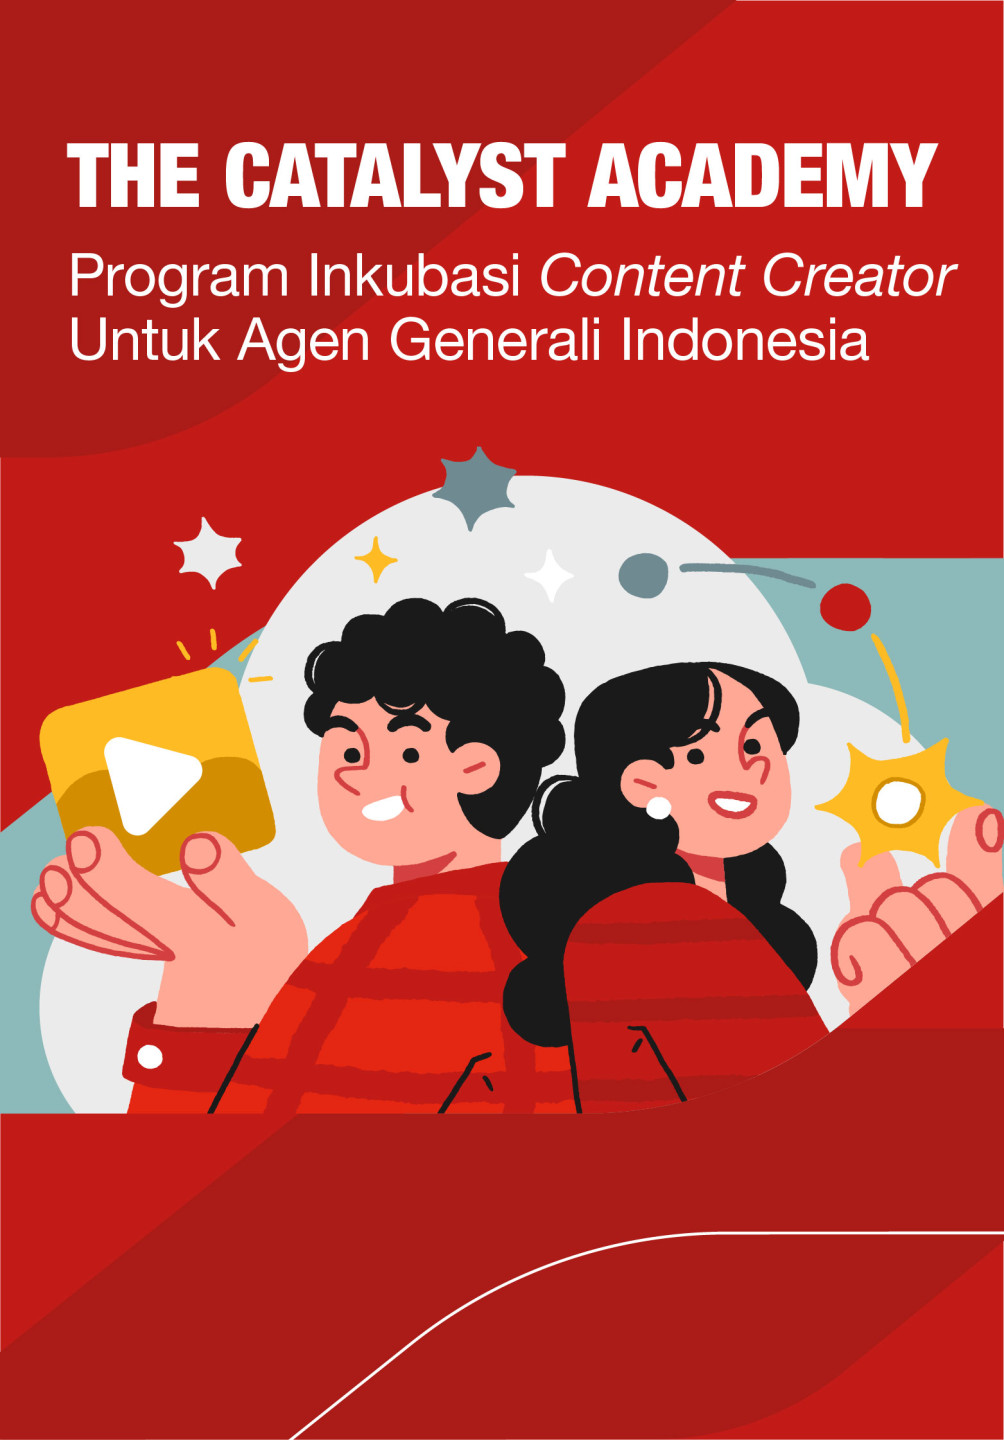 Ilustrasi dua orang karakter yang bersemangat dengan ikon konten digital, menggambarkan Program Inkubasi Content Creator dari The Catalyst Academy untuk agen Asuransi Generali Indonesia.